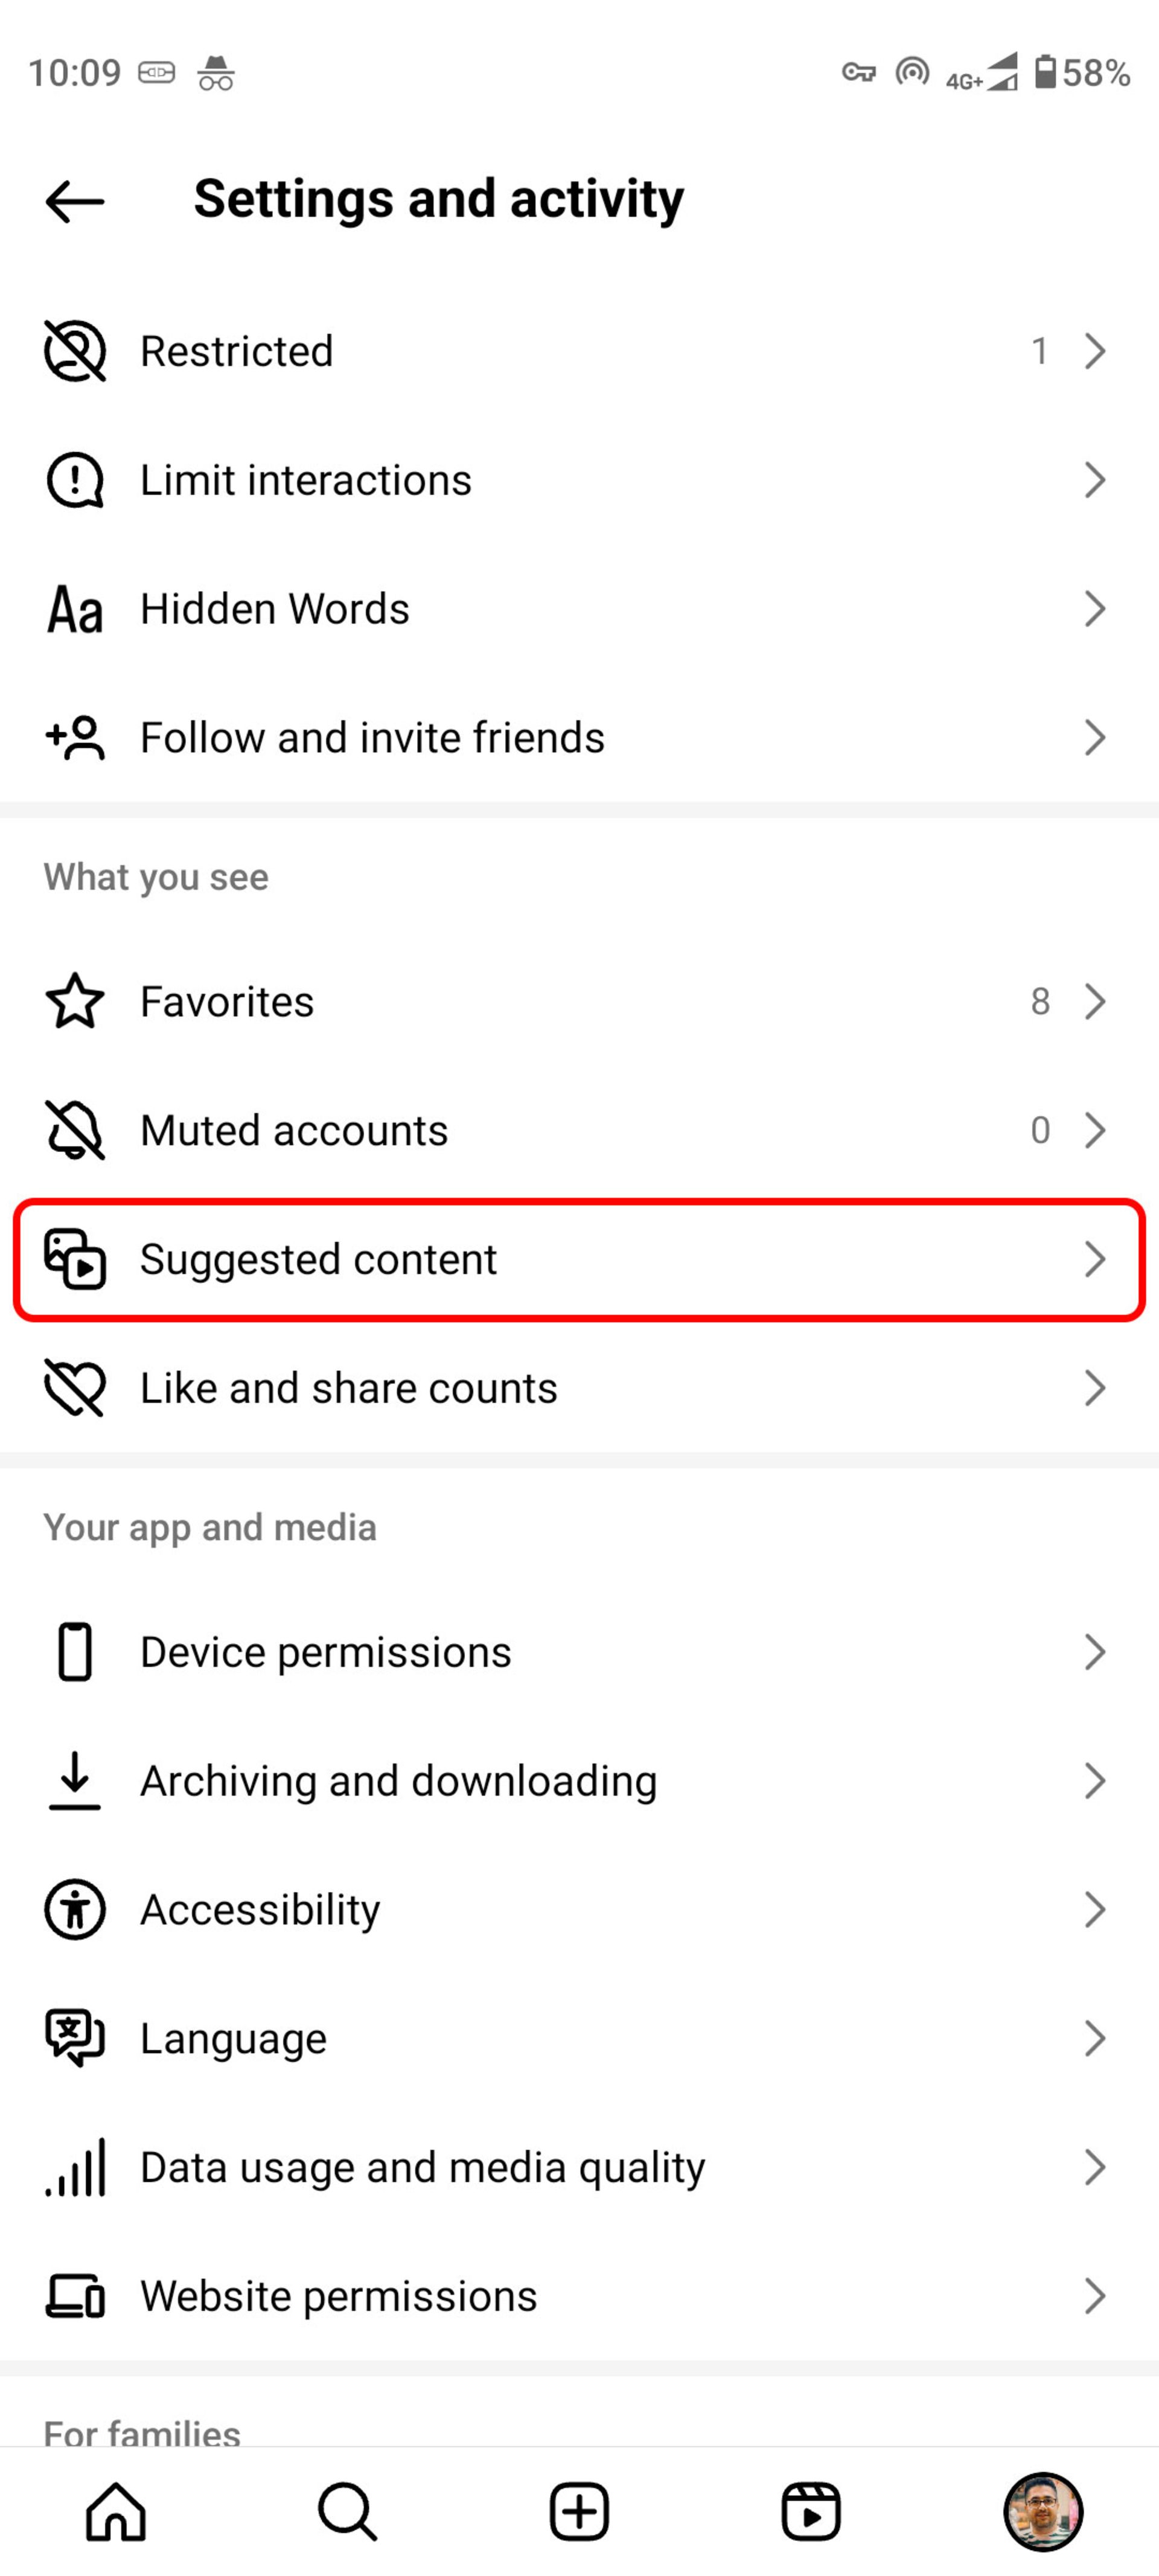 صفحه settings and activity اینستاگرام Suggested content